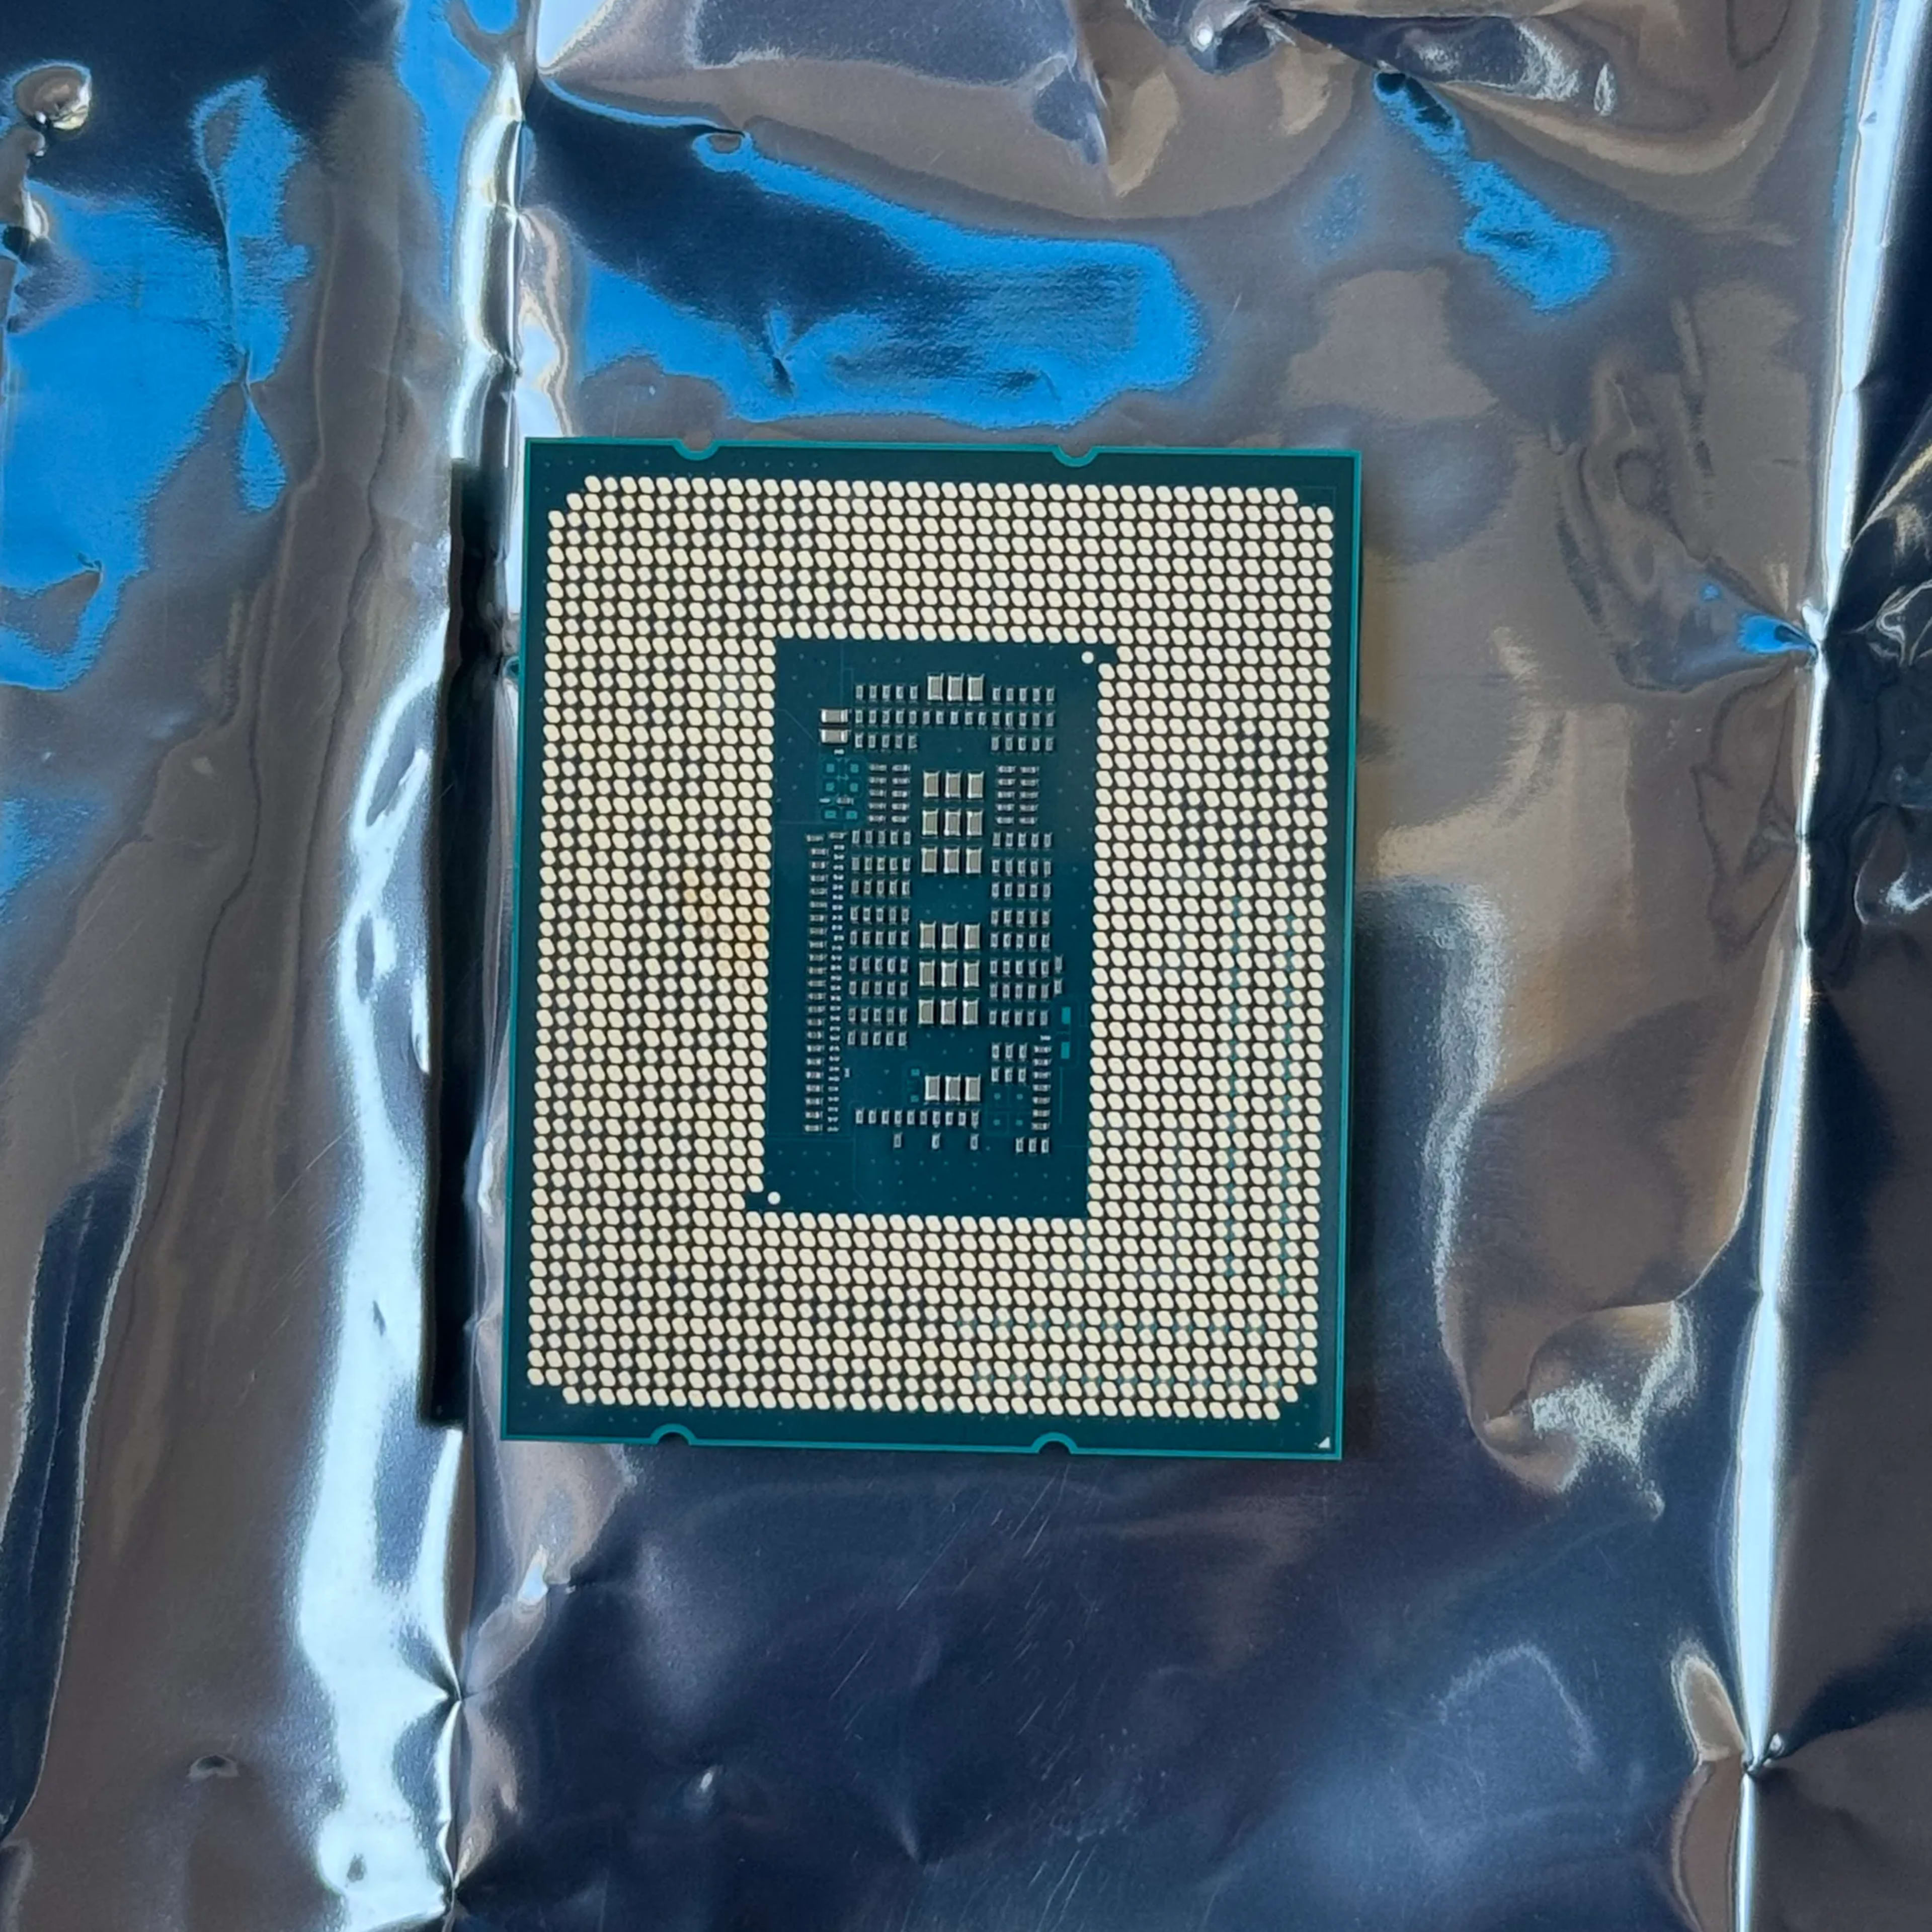  Intel Core i5-13600KFDesktop Processor 14 cores (6 P